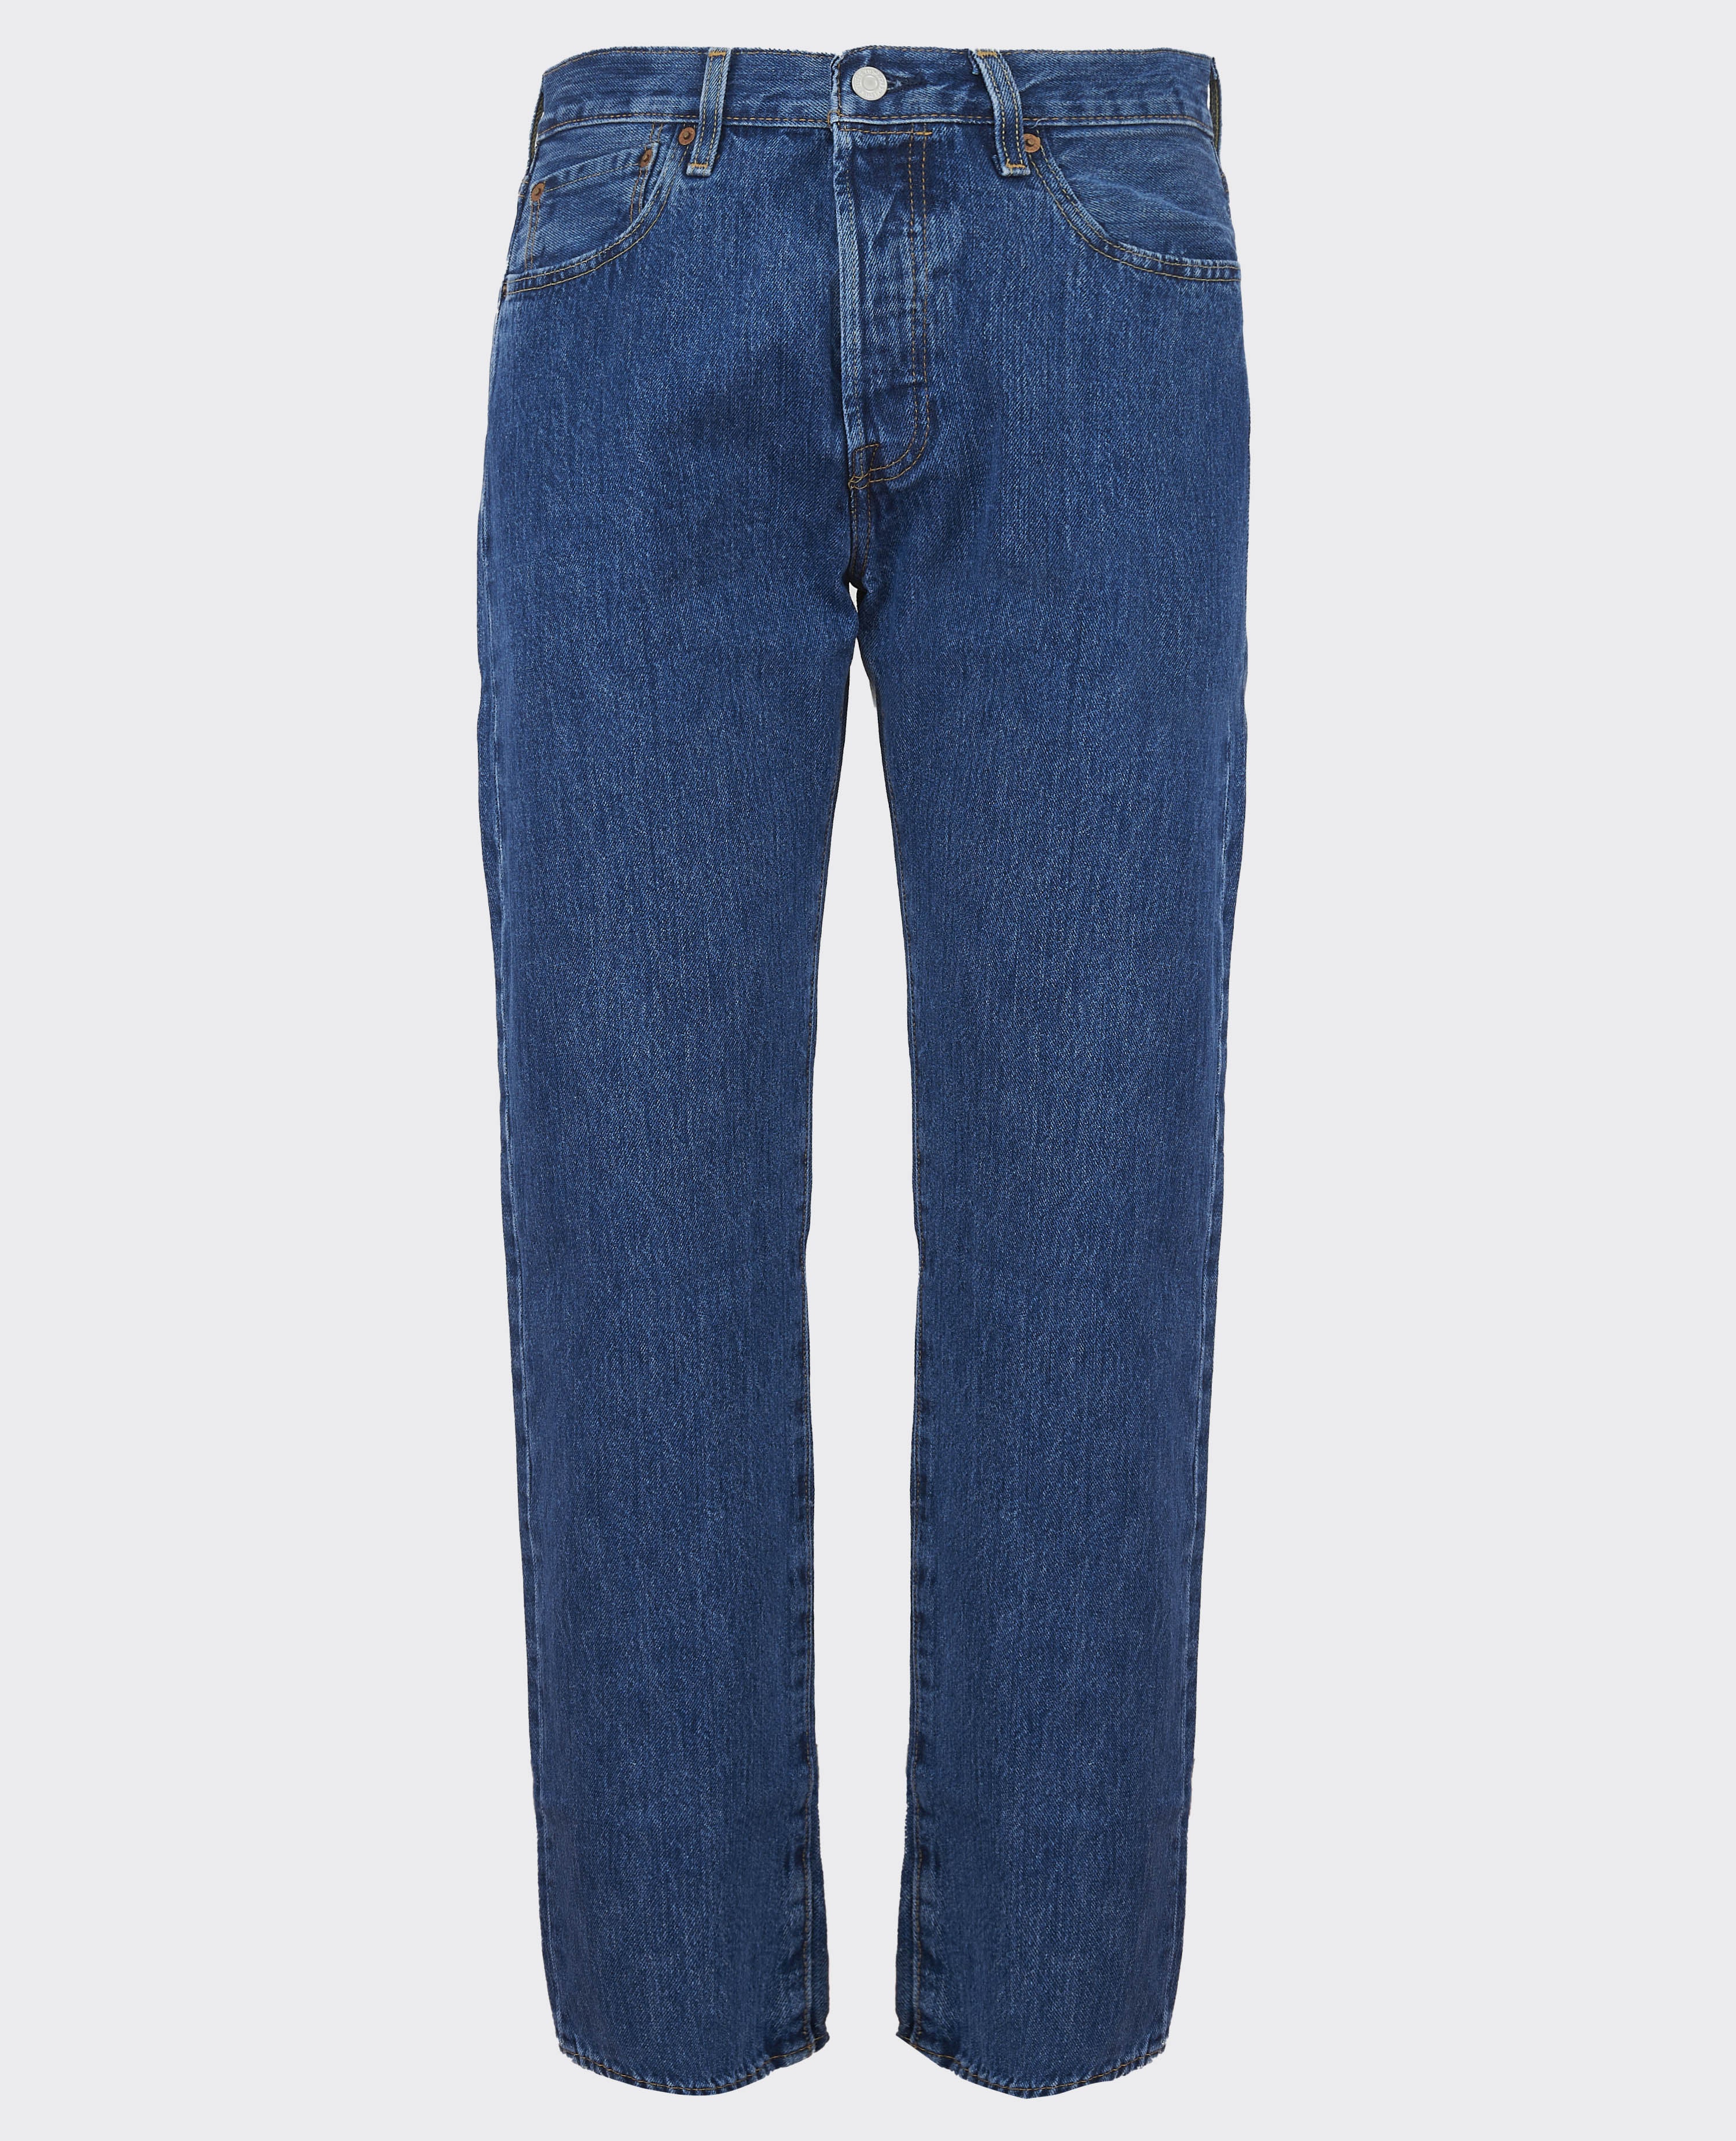 Jeans Levi's 501 00501-00114